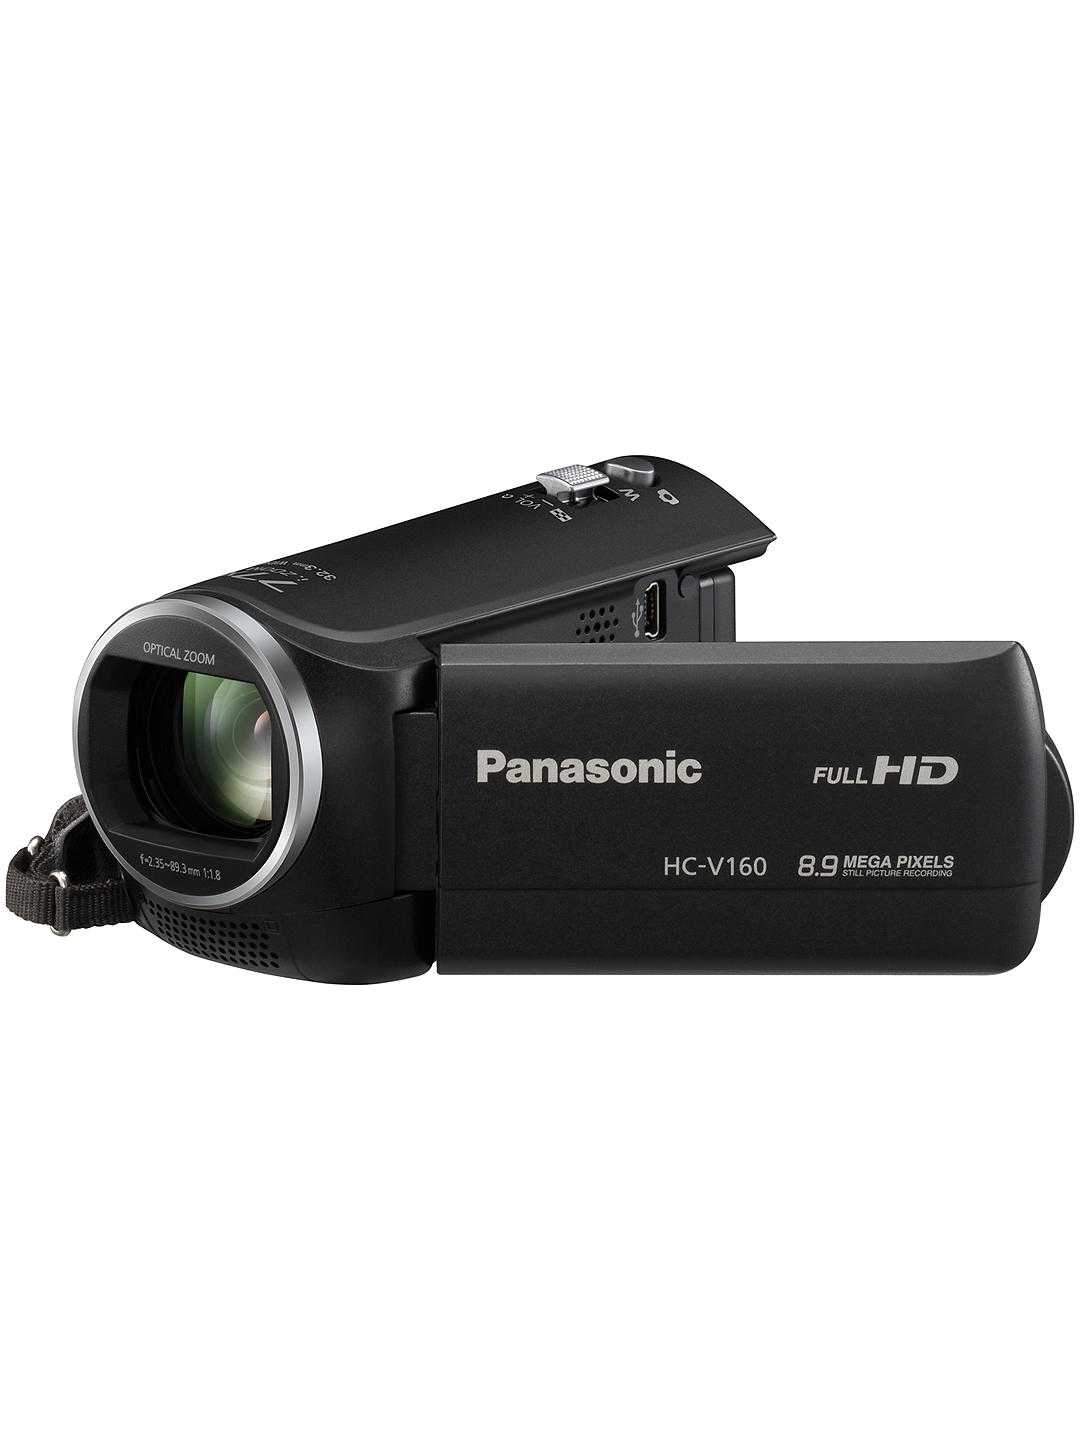 Видеокамера panasonic hc-x810 — купить, цена и характеристики, отзывы